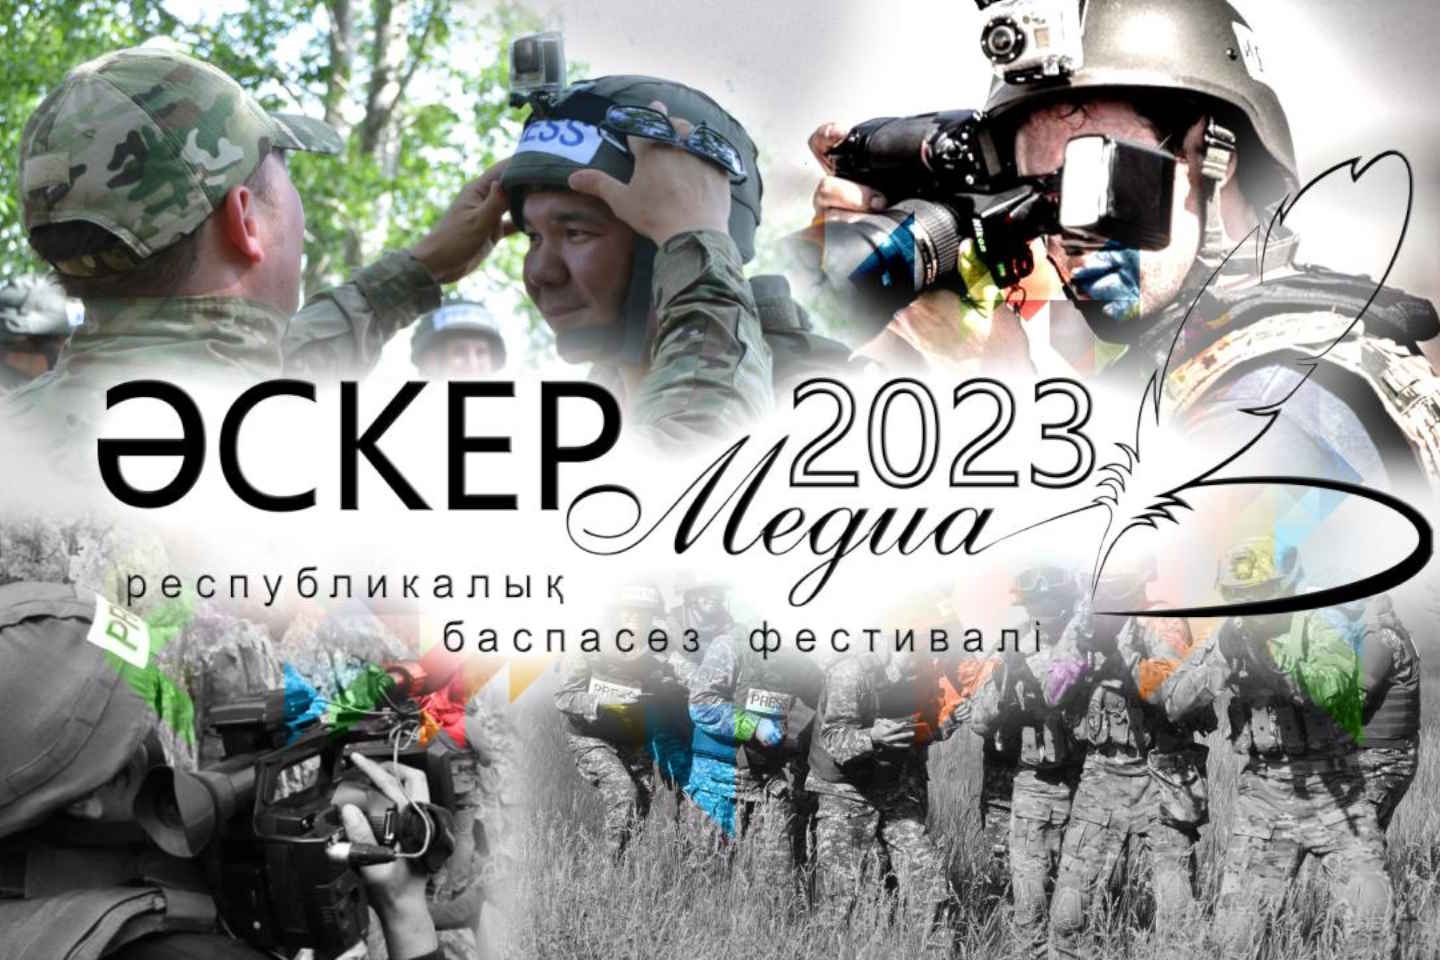 Новости Казахстана / Общество в Казахстане / Министерство обороны РК организует фестиваль прессы